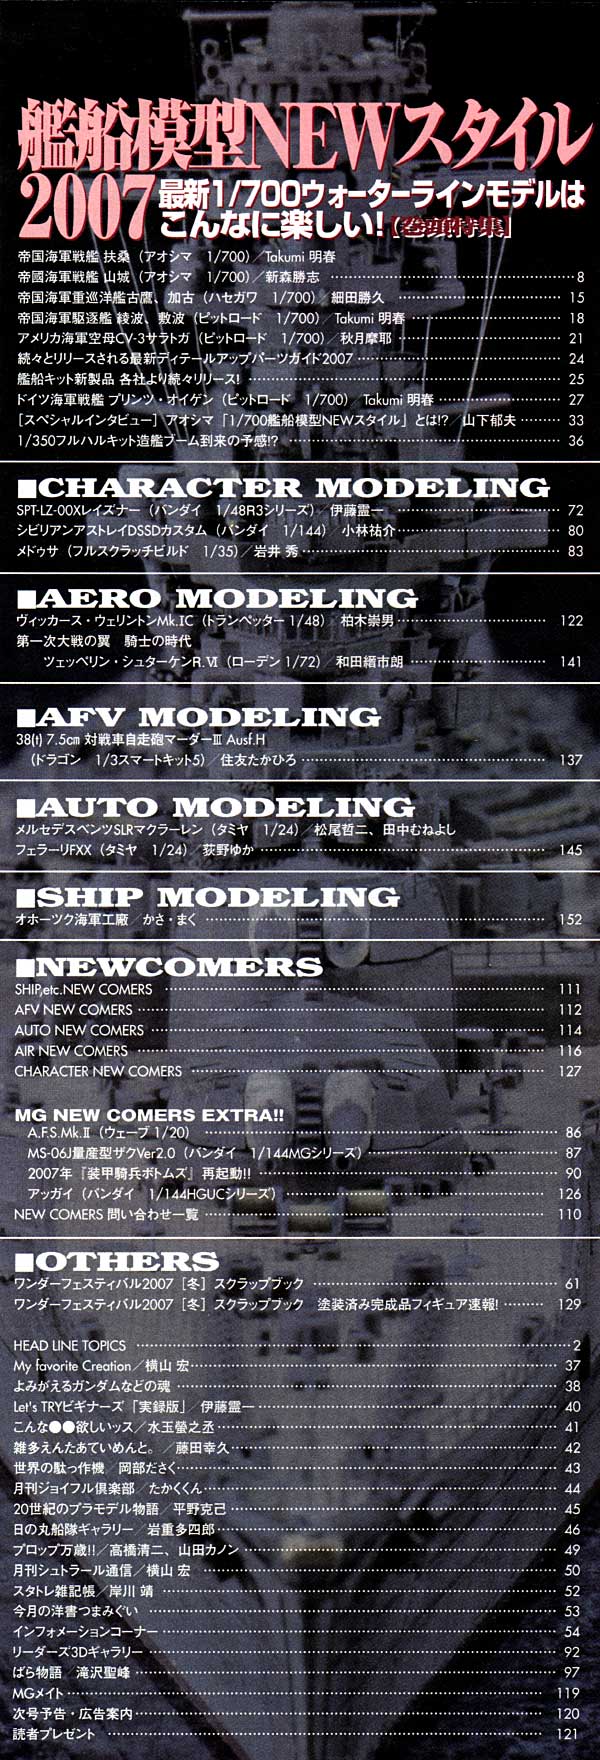 モデルグラフィックス 2007年5月号 雑誌 (大日本絵画 月刊 モデルグラフィックス No.270) 商品画像_1